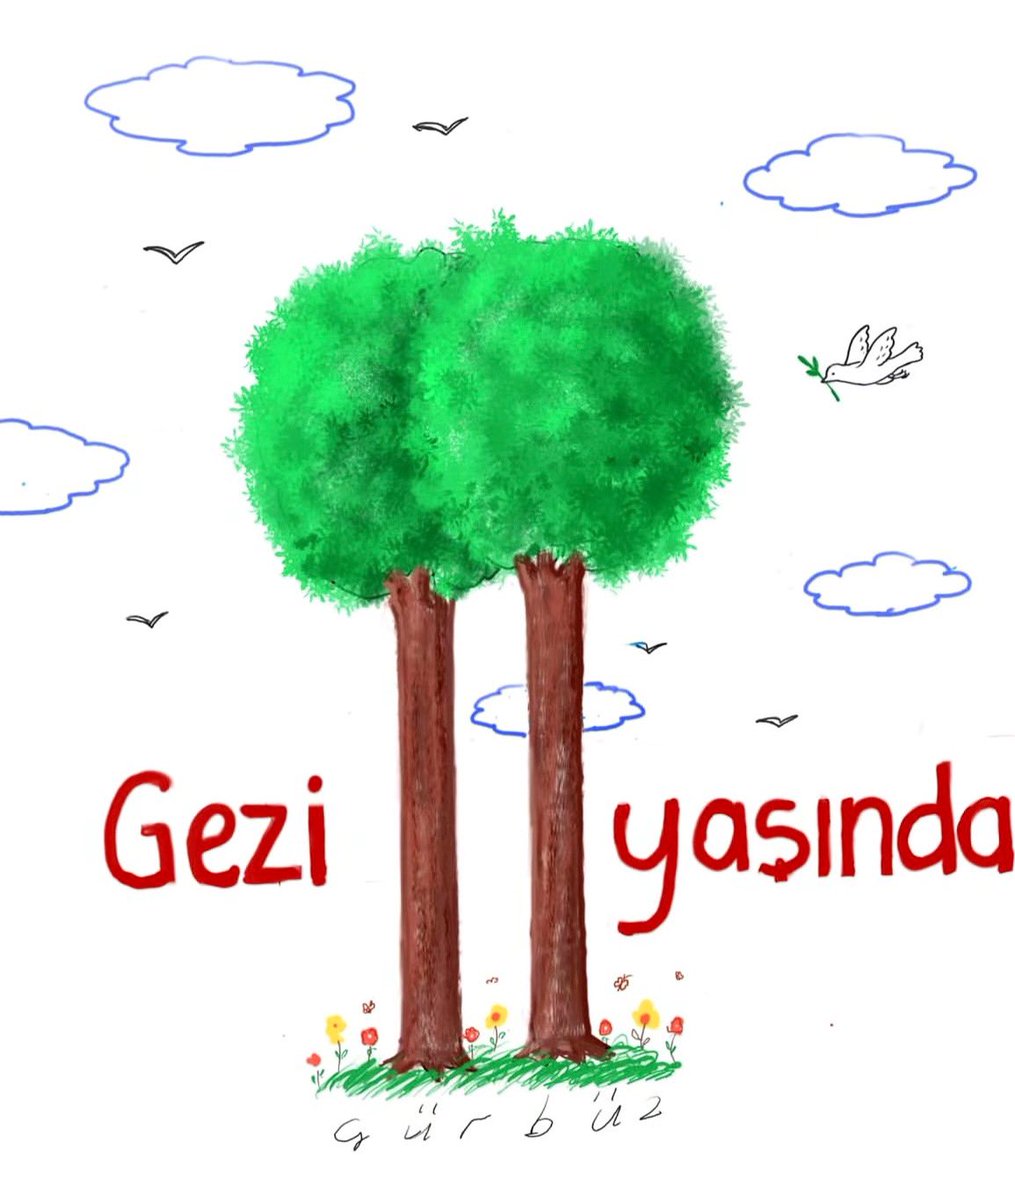 Gezi’nin 11. yılında @gde54 ile Melih Cevdet Anday’ın “Rahatı Kaçan Ağaç” şiirinin son kıtasını yan yana getirelim: Ona bir kitap vereceğim Rahatını kaçırmak için Bir öğrenegörsün aşkı Ağacı o vakit seyredin. #Gezi11Yaşında